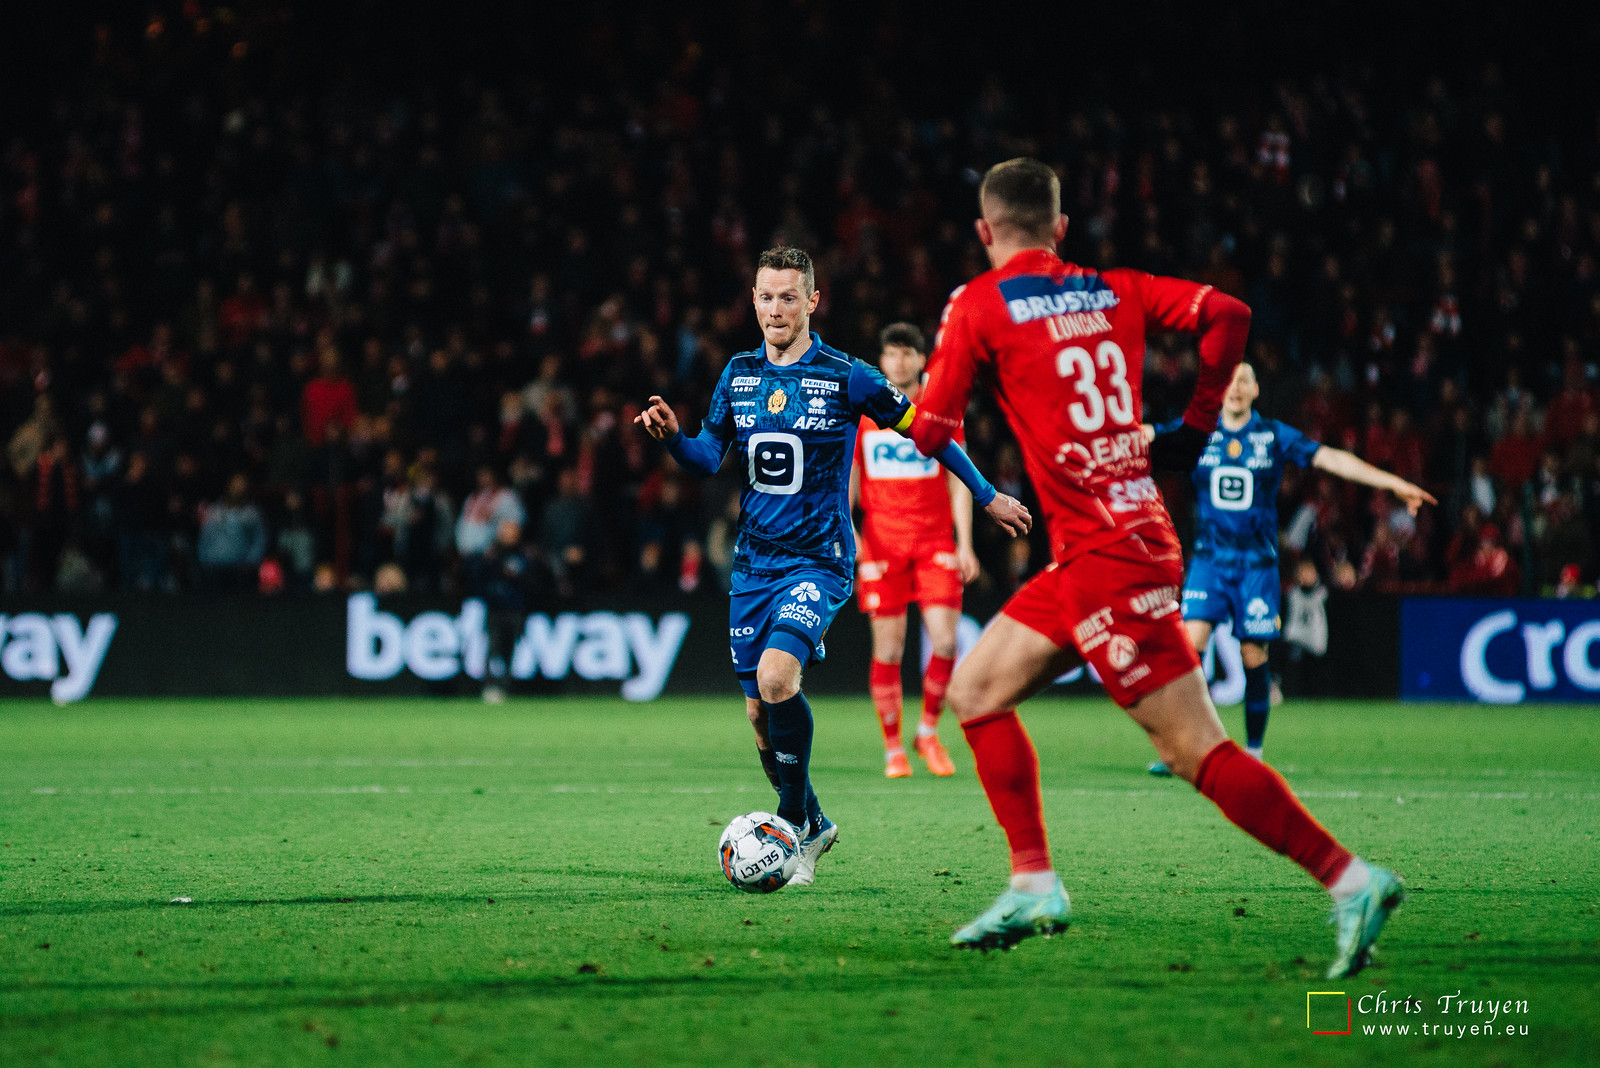 KV Kortrijk - KV Mechelen (BvB) (0-1)